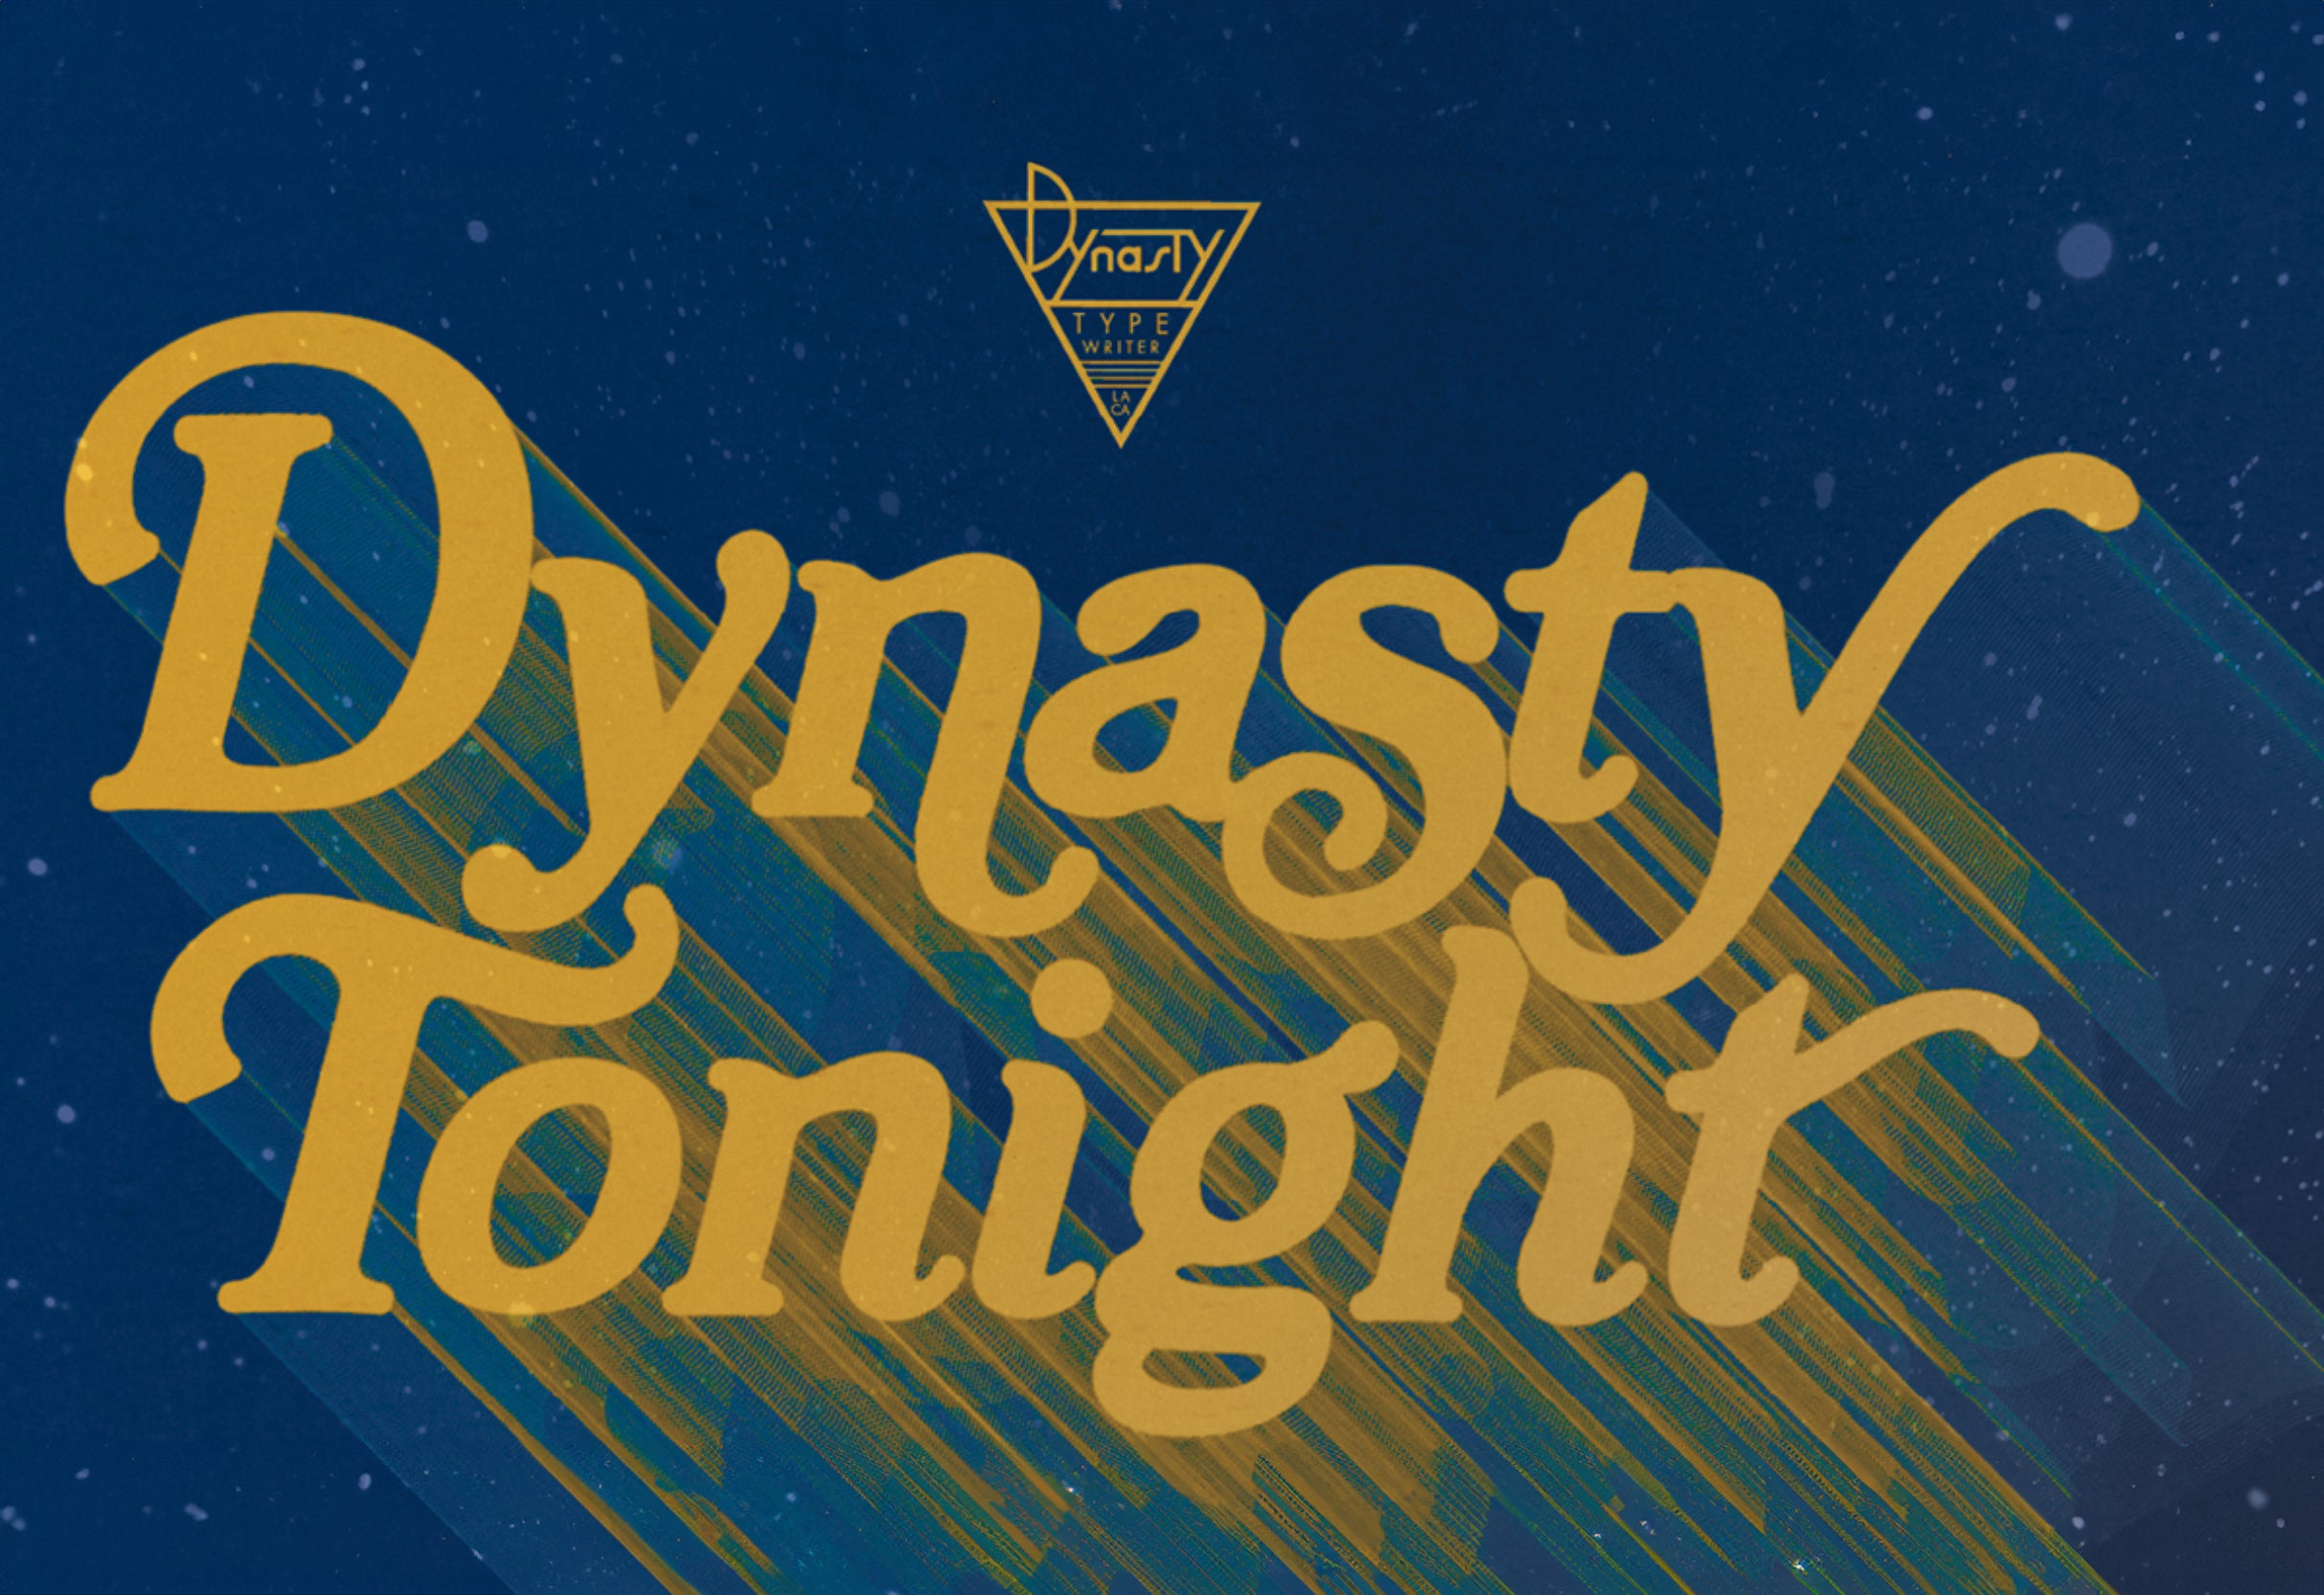 Netflix Is A Joke Presents: Dynasty Tonight!